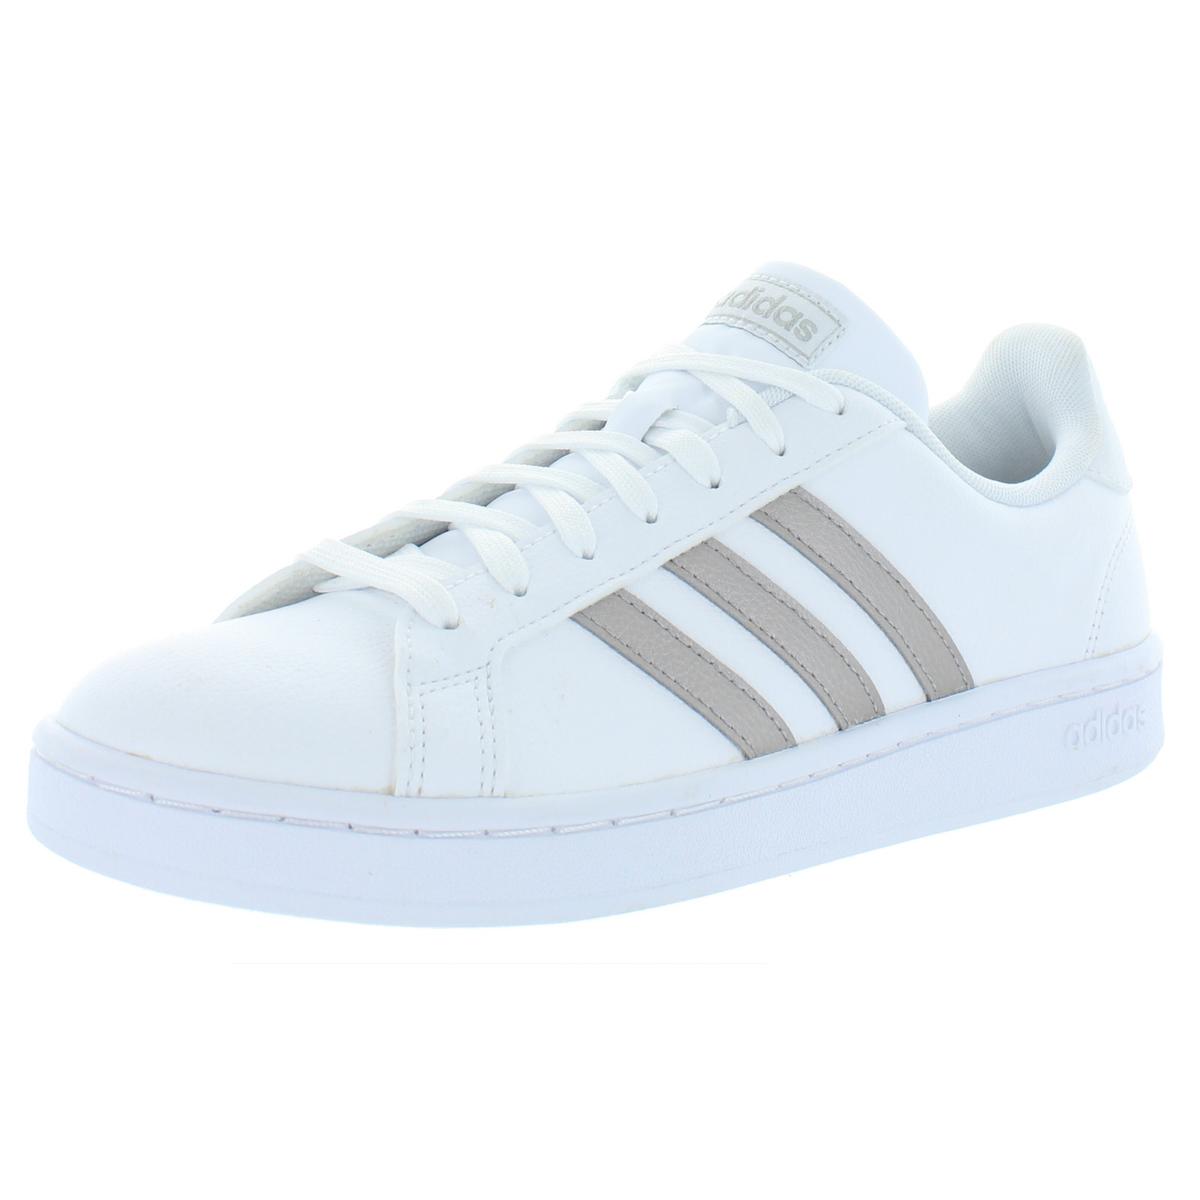 Adidas Womens Grand Court White Running Shoes Sneakers 8 Medium (B M